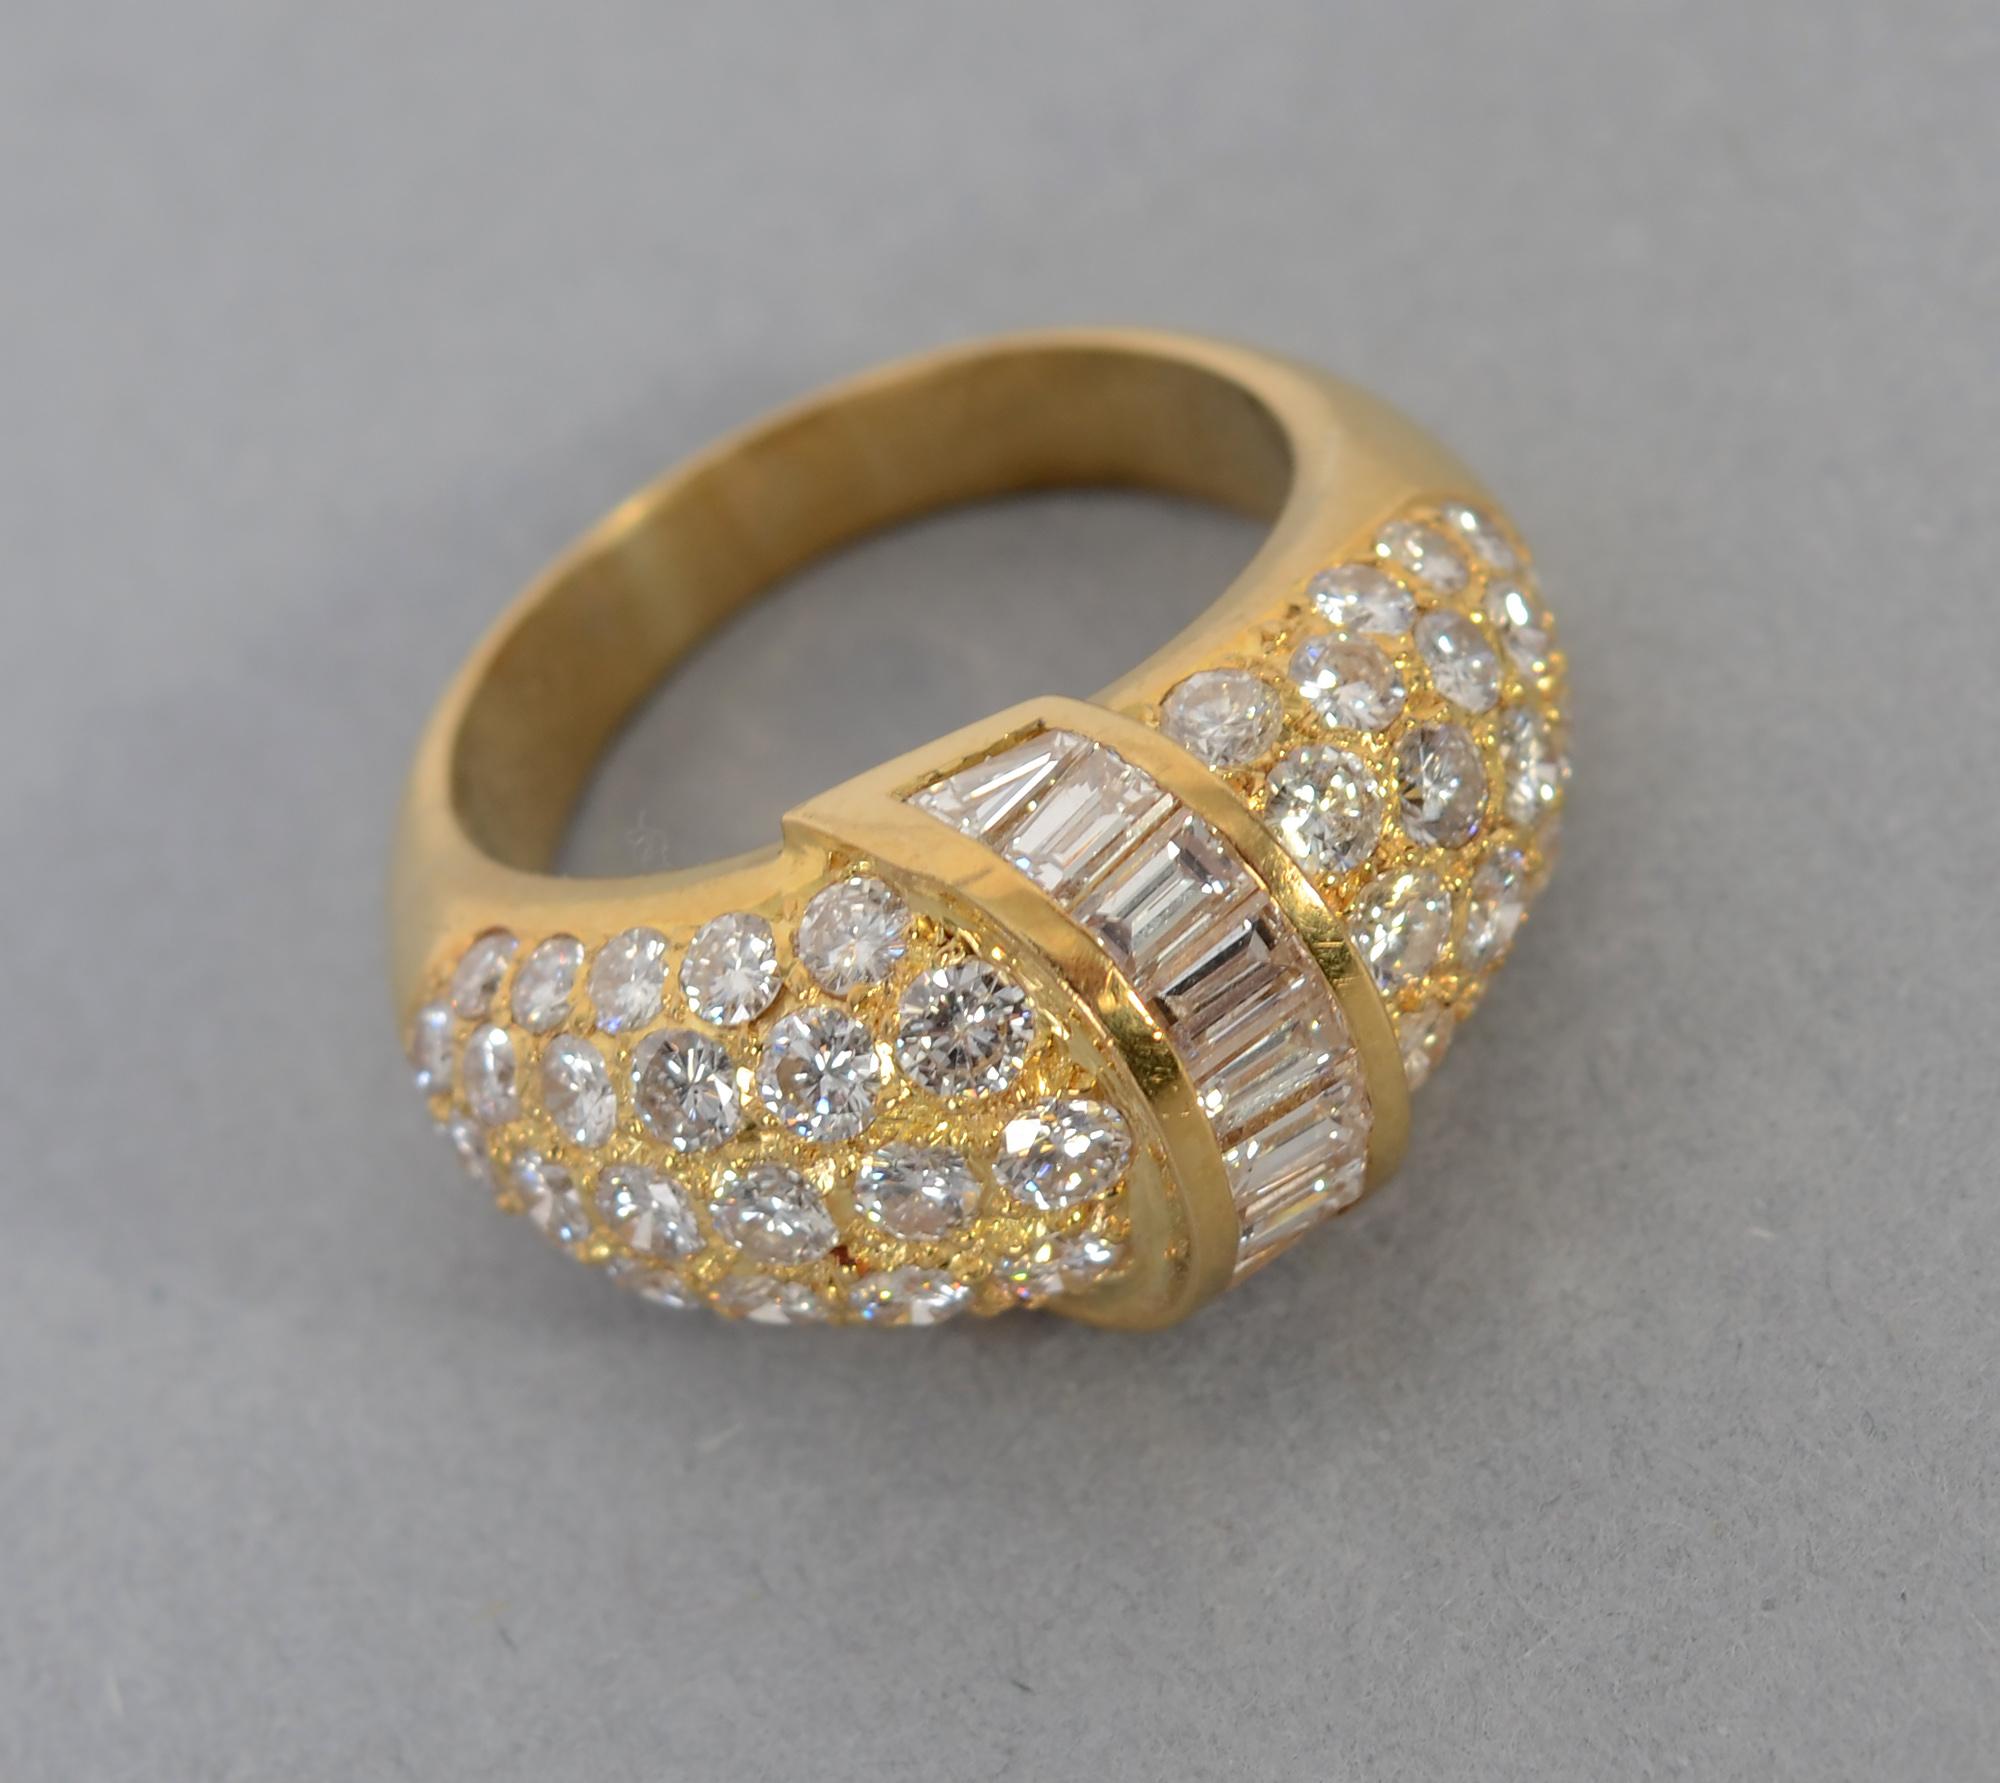 Eleganter Cocktailring aus 18 Karat Gold mit 60 Diamanten mit einem Gesamtgewicht von etwa 3,5 Karat. Steine im Baguetteschliff überlagern ein gewölbtes Band aus runden Brillanten. 
Der Ring hat die Größe 7 3/4, kann aber leicht nach oben oder unten